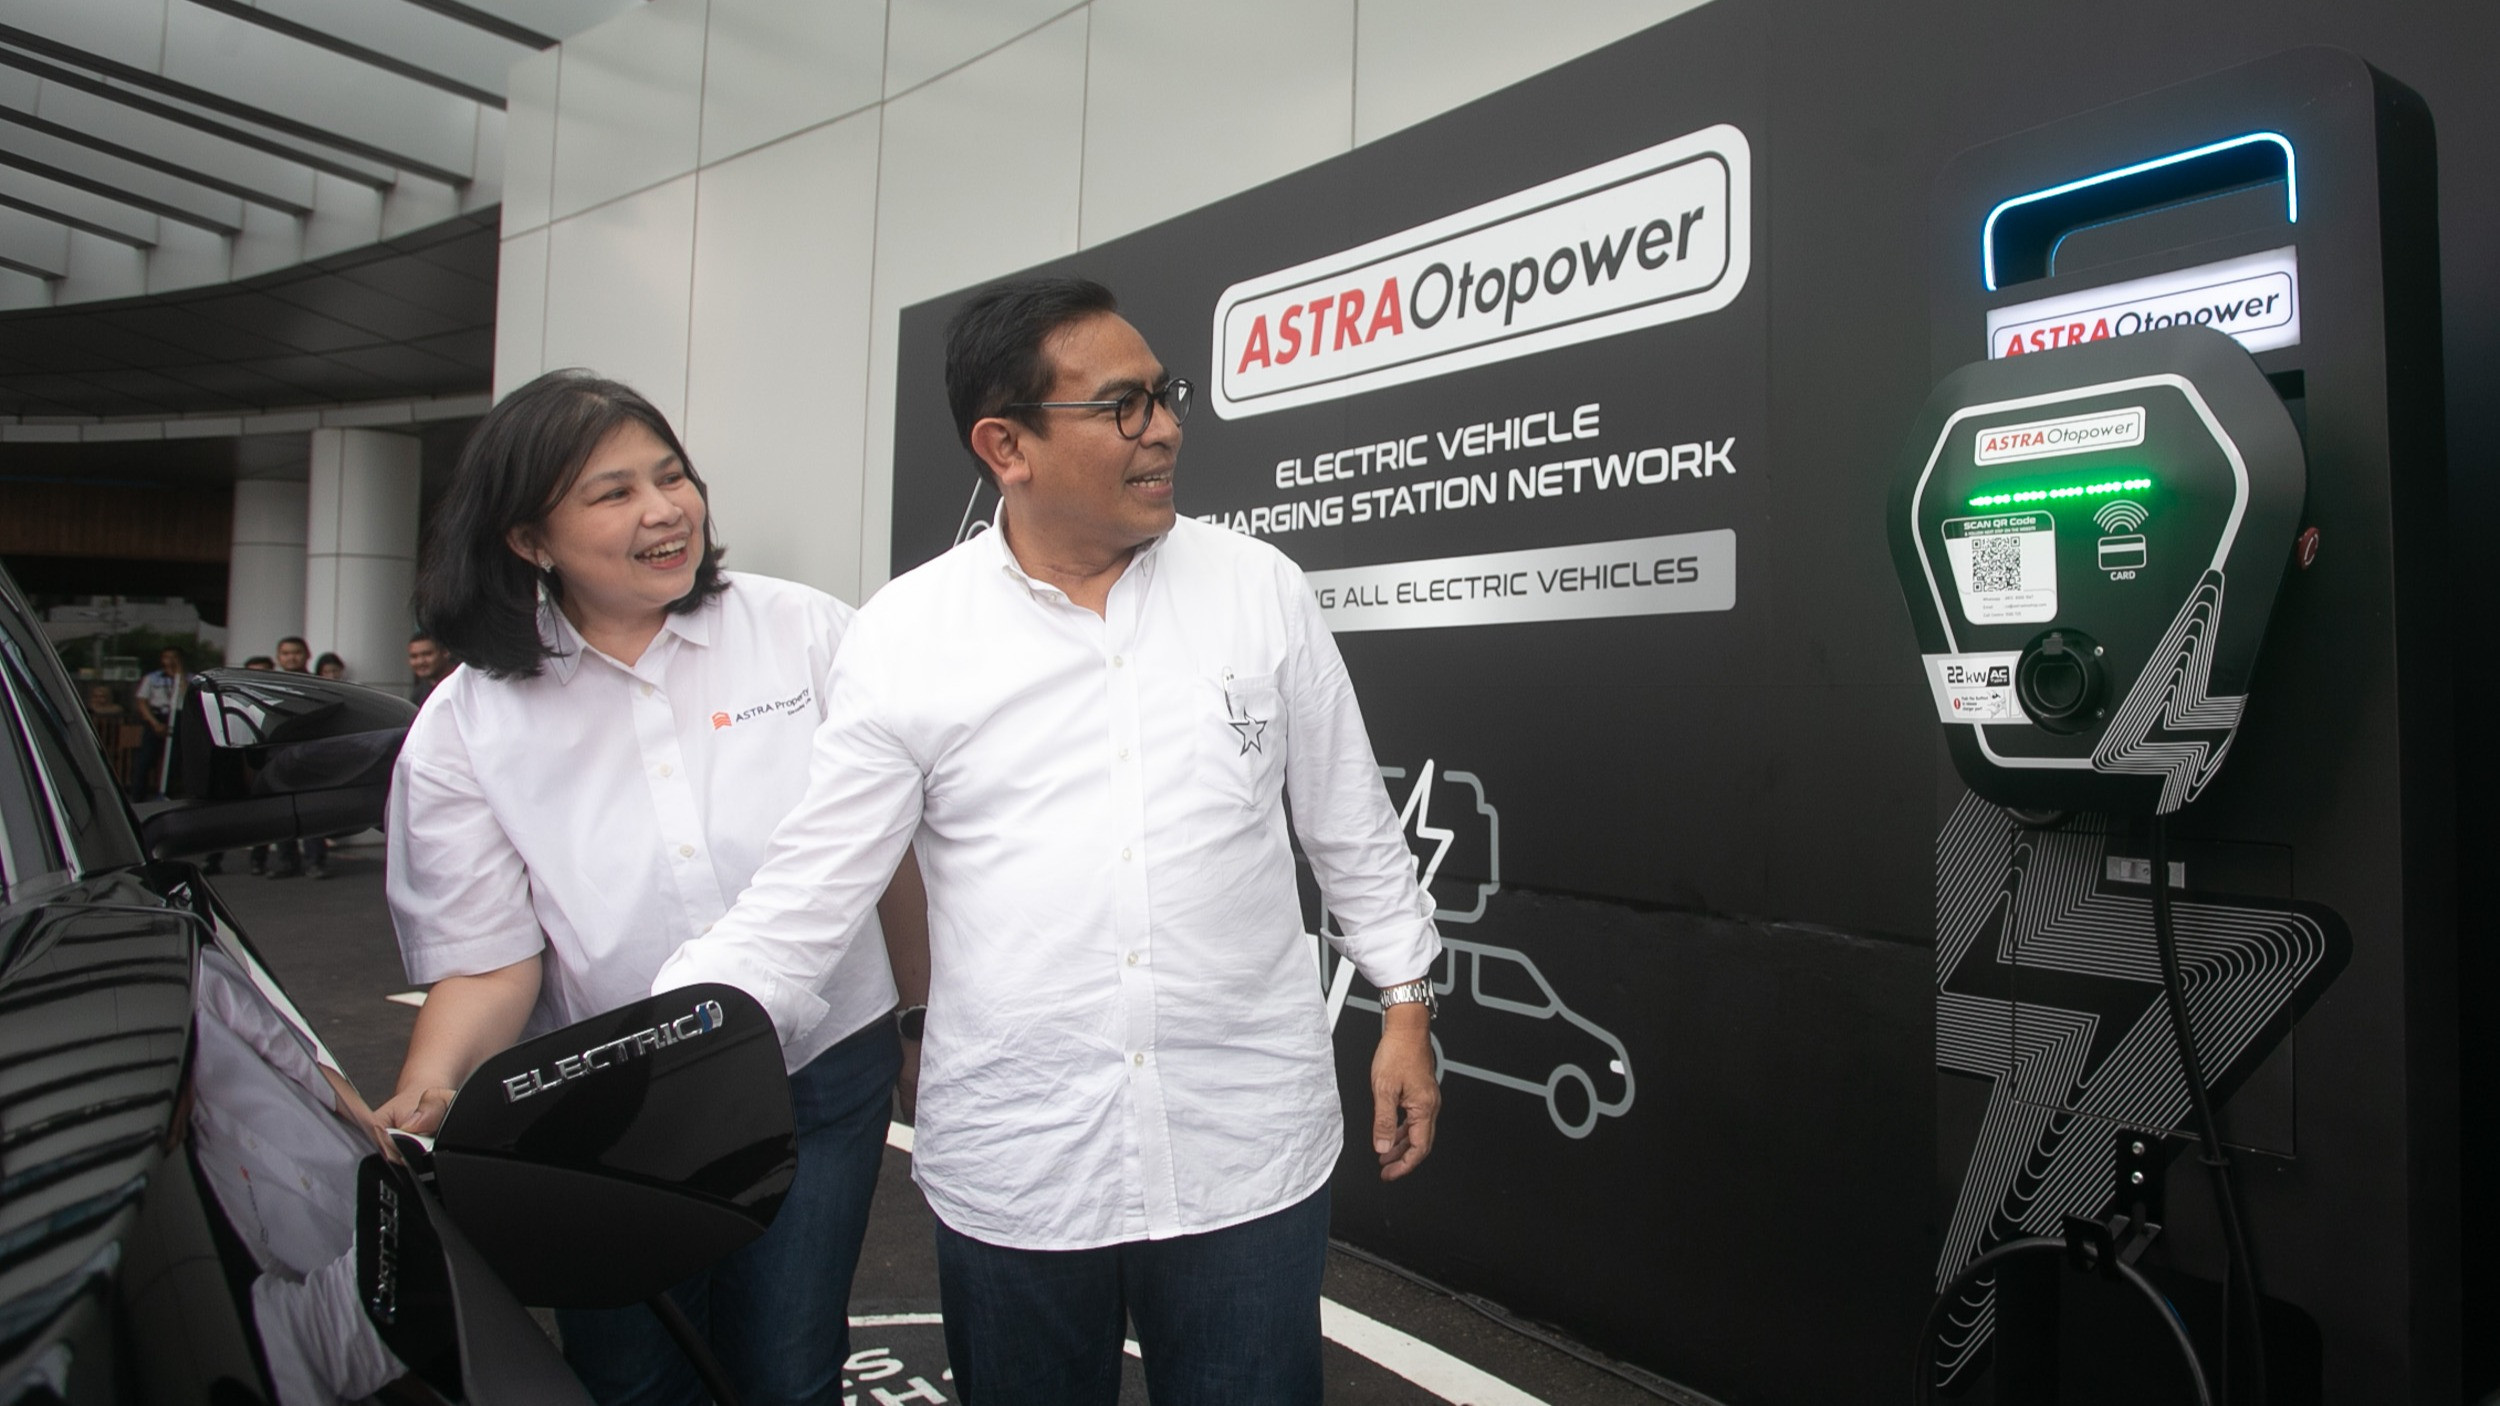 Astra Property bersinergi dengan Astra Otoparts menghadirkan fasilitas pengisian daya Kendaraan Bermotor Listrik Berbasis Baterai (KBLBB) Astra Otopower di beberapa proyek Astra Property.